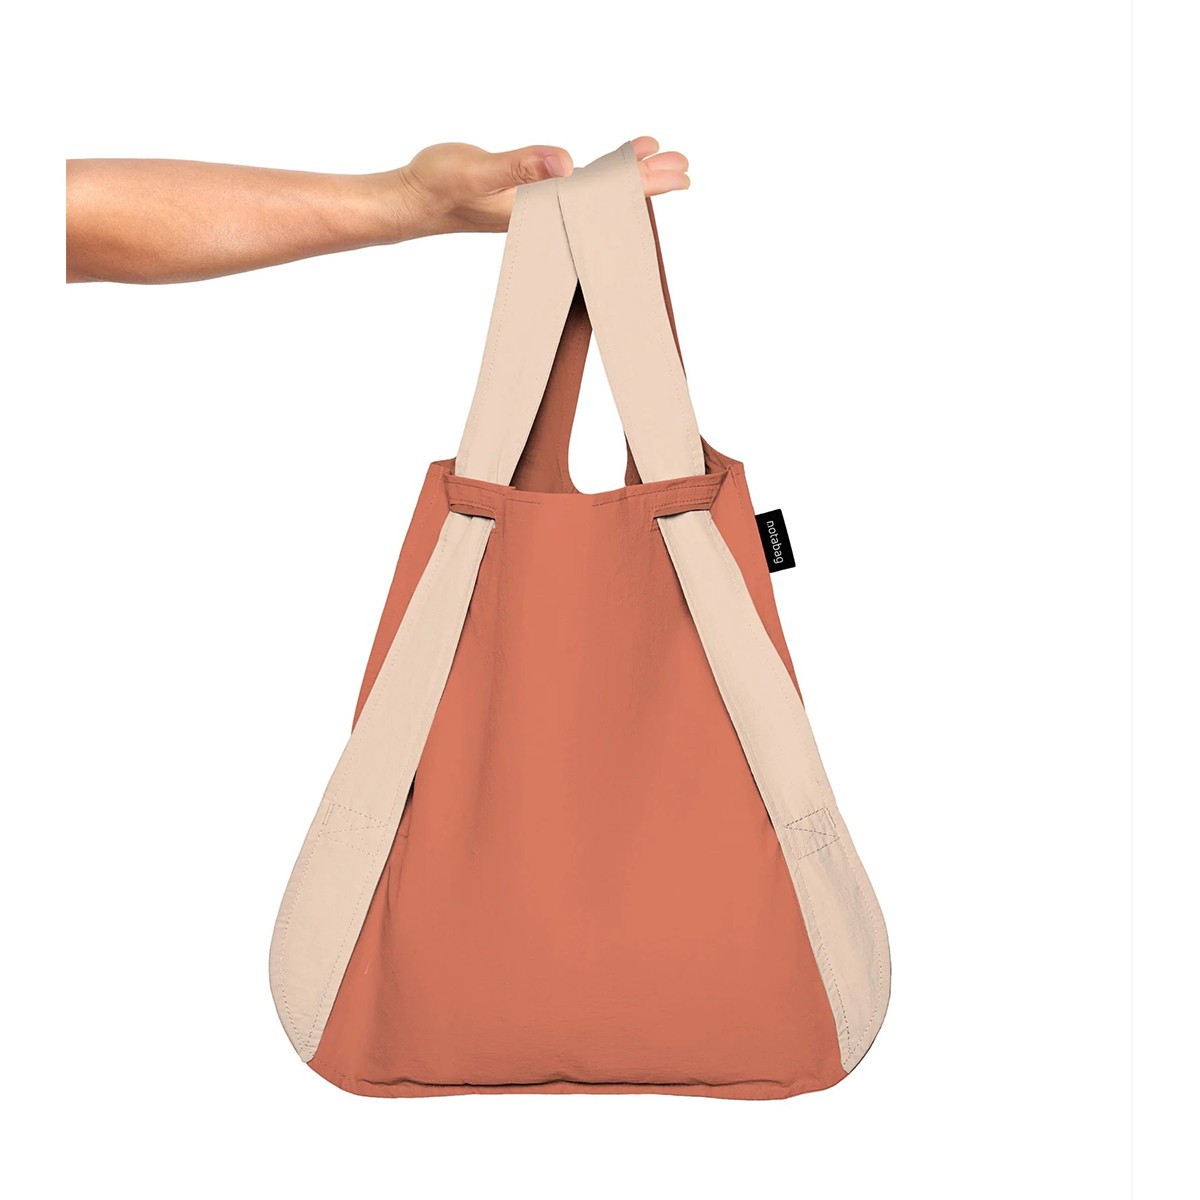 Shopping bag - Notabag Sand/Terracotta